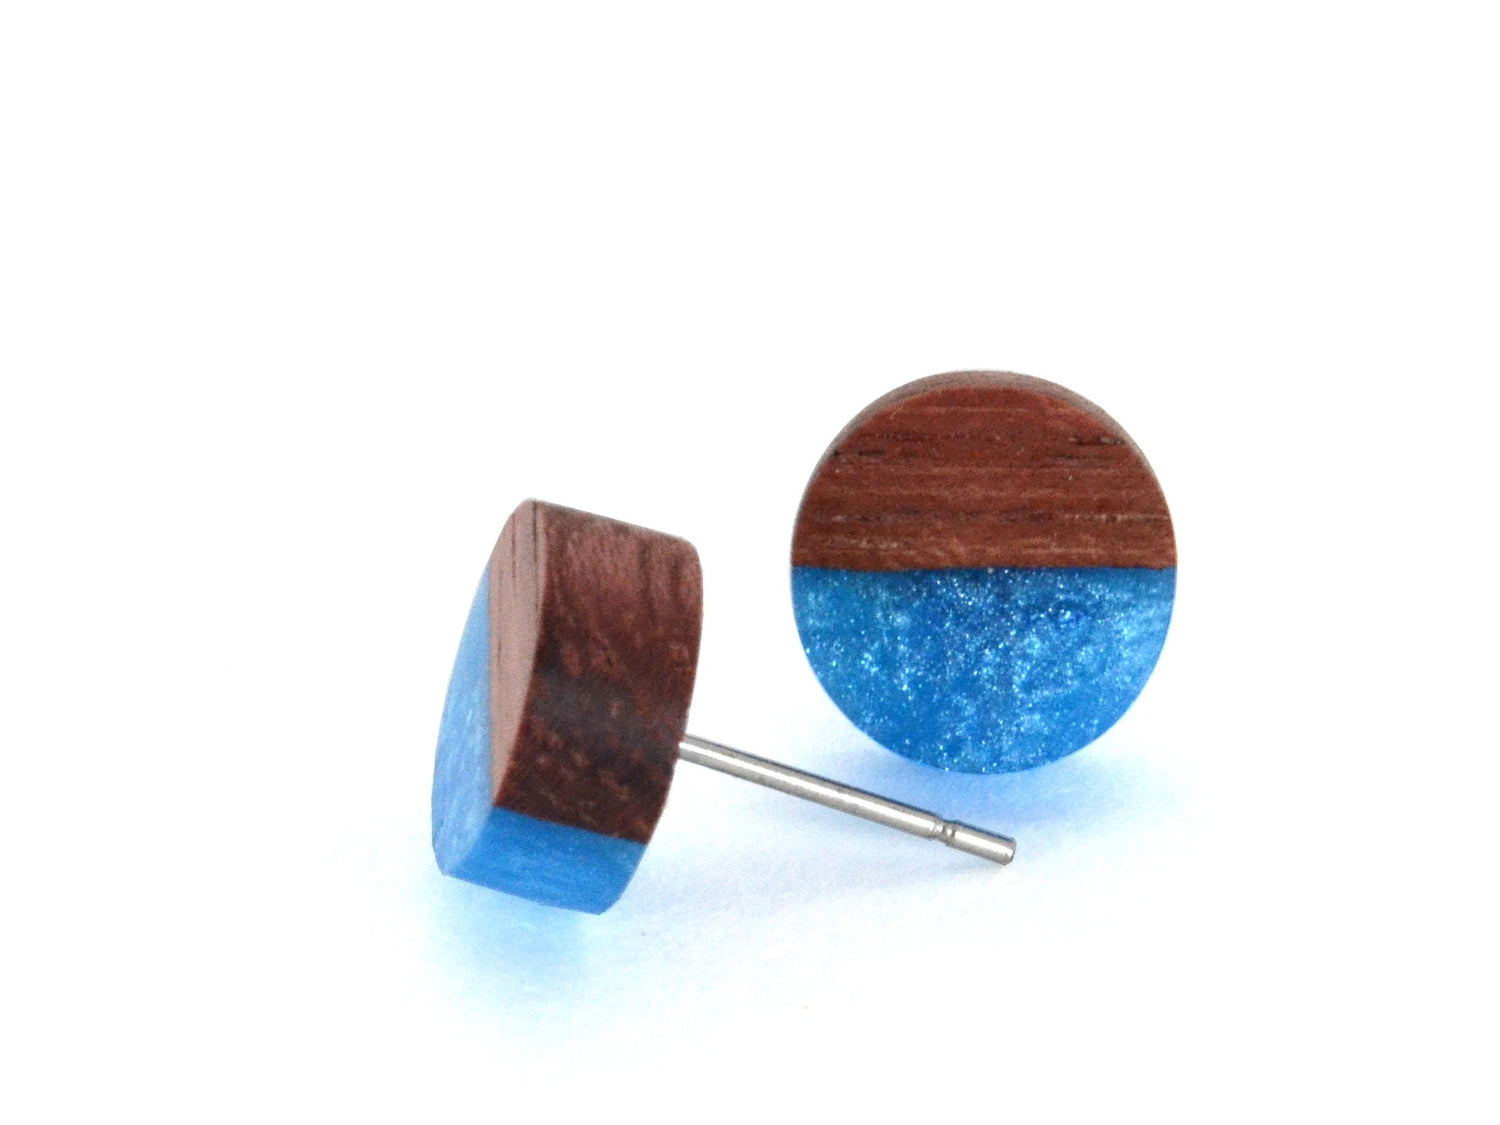 purpleheart wood earrings, sparkly ocean blue epoxy resin, stainless steel nickel free studs